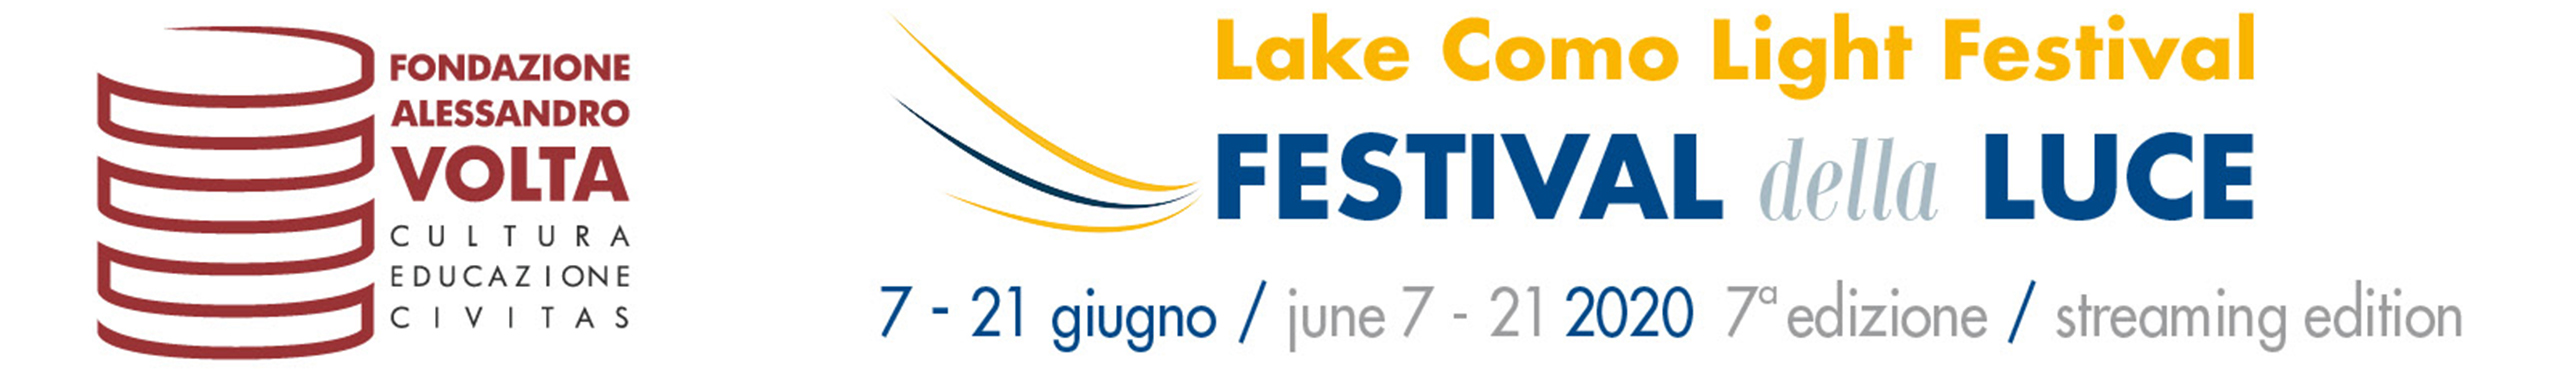 Streaming edition del Festival della Luce Lake Como